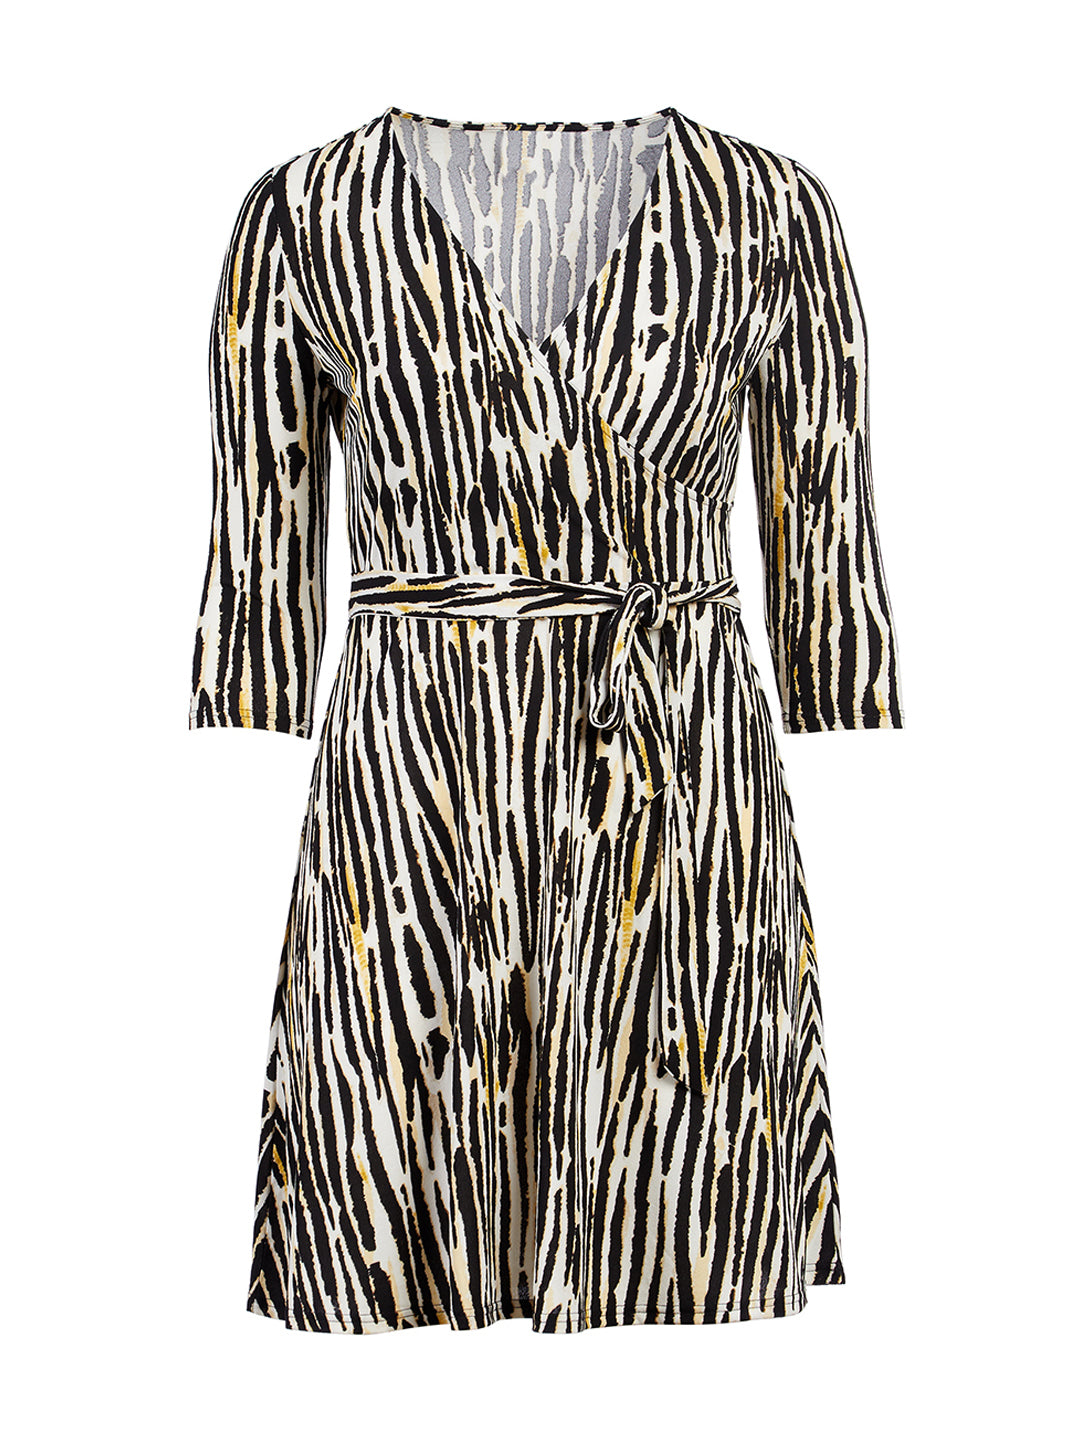 Inky Zebra Perfect Wrap Dress | Leota ...